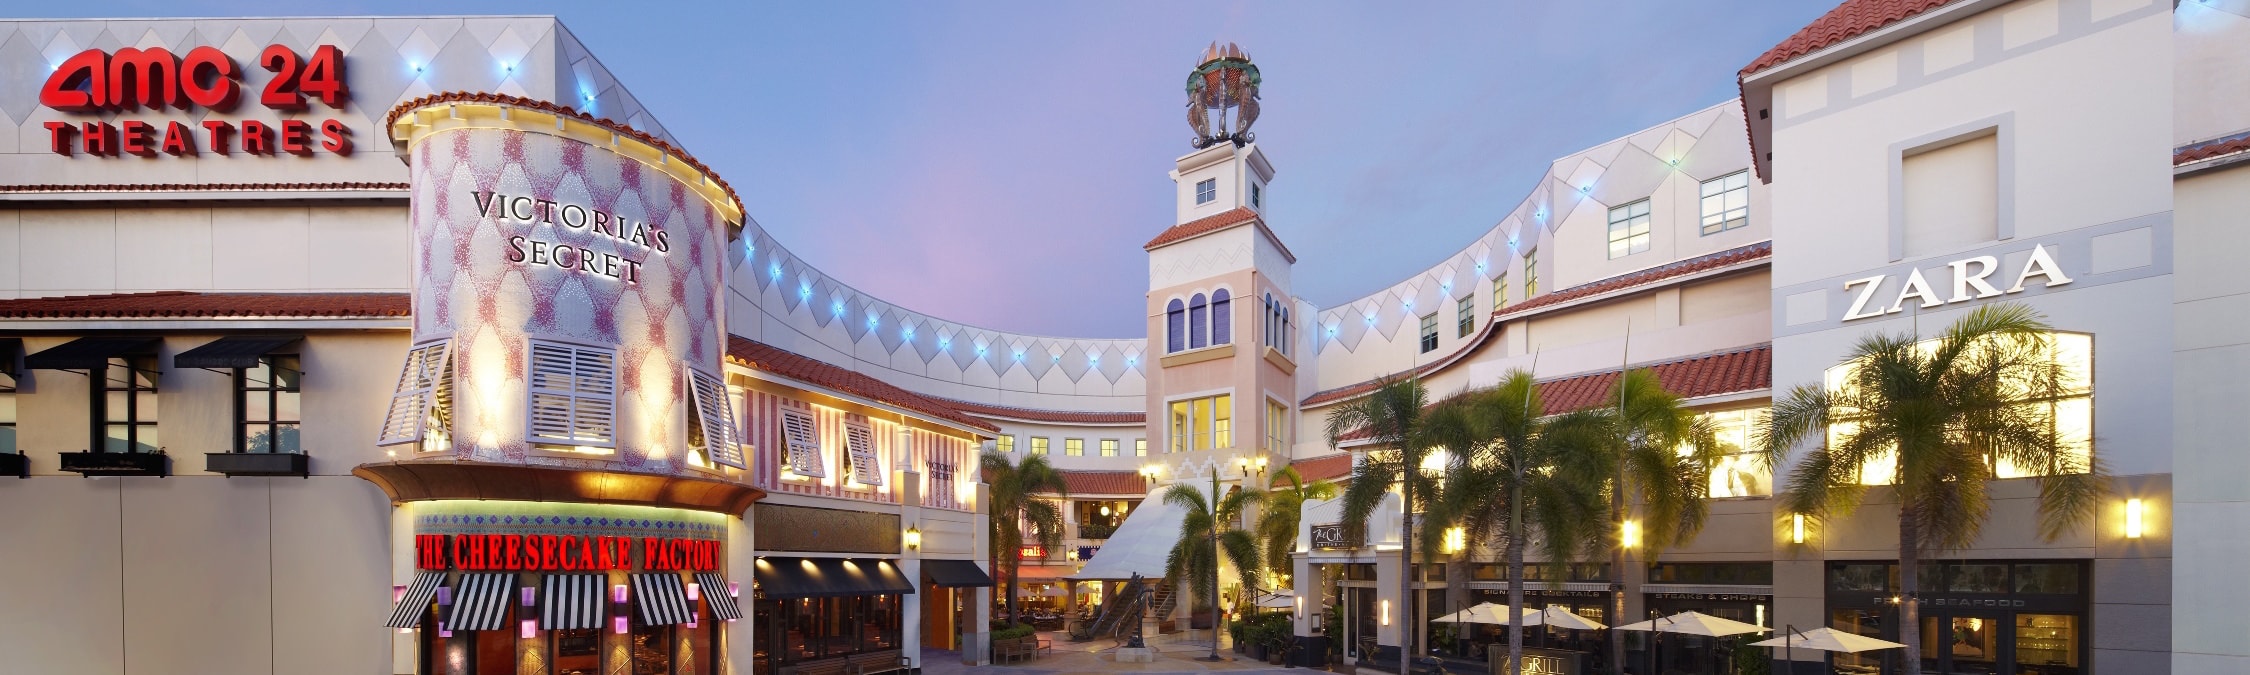 Aventura Mall – Shopping Malls in Miami